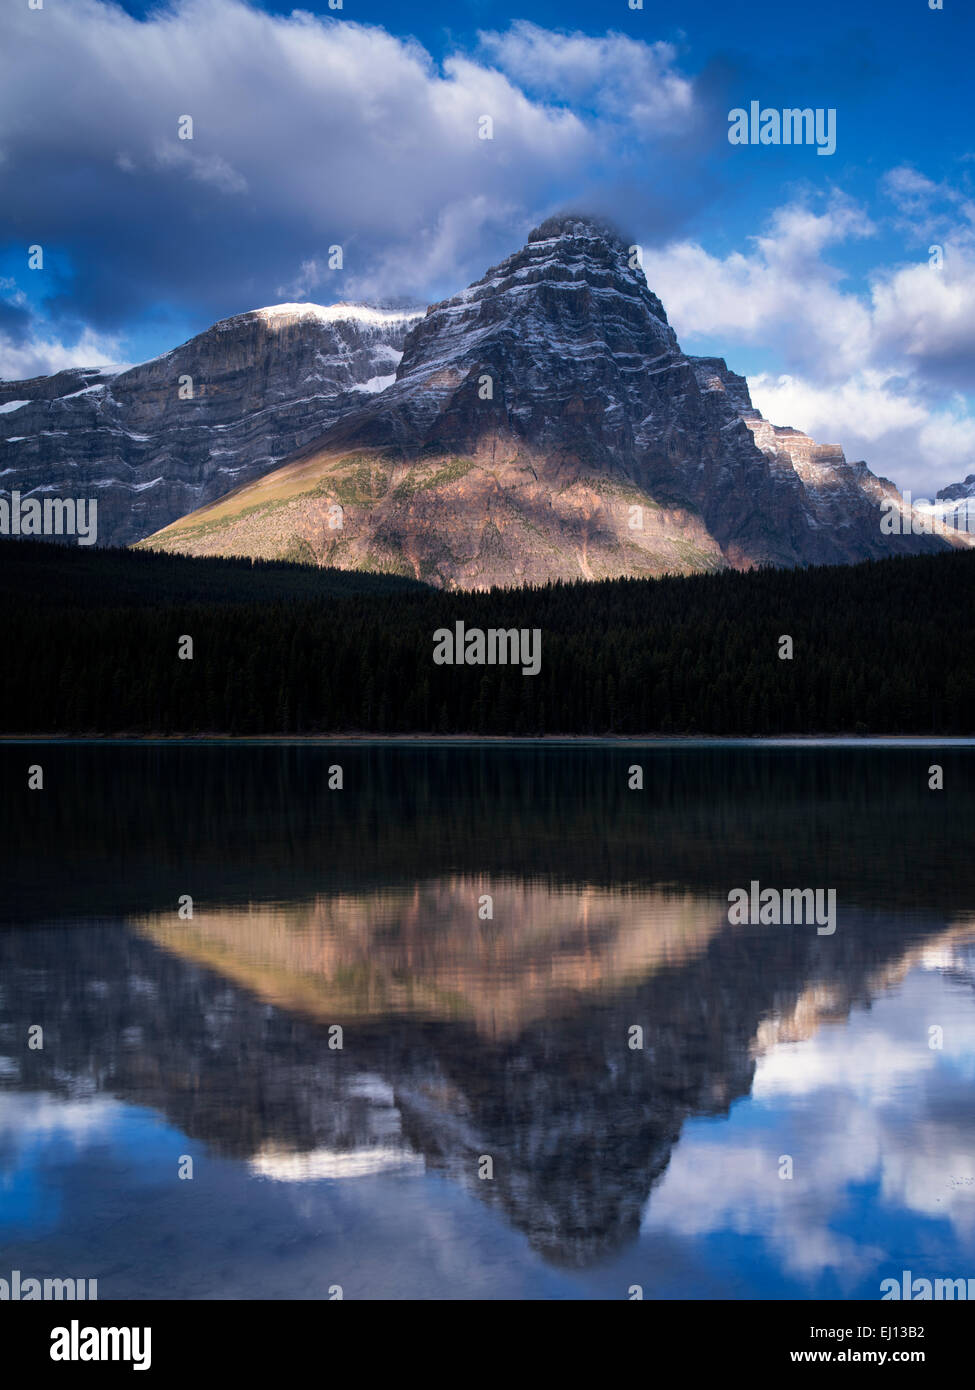 Lacs et montagnes de la sauvagine avec reflets. Le parc national Banff, Alberta Canada. Banque D'Images